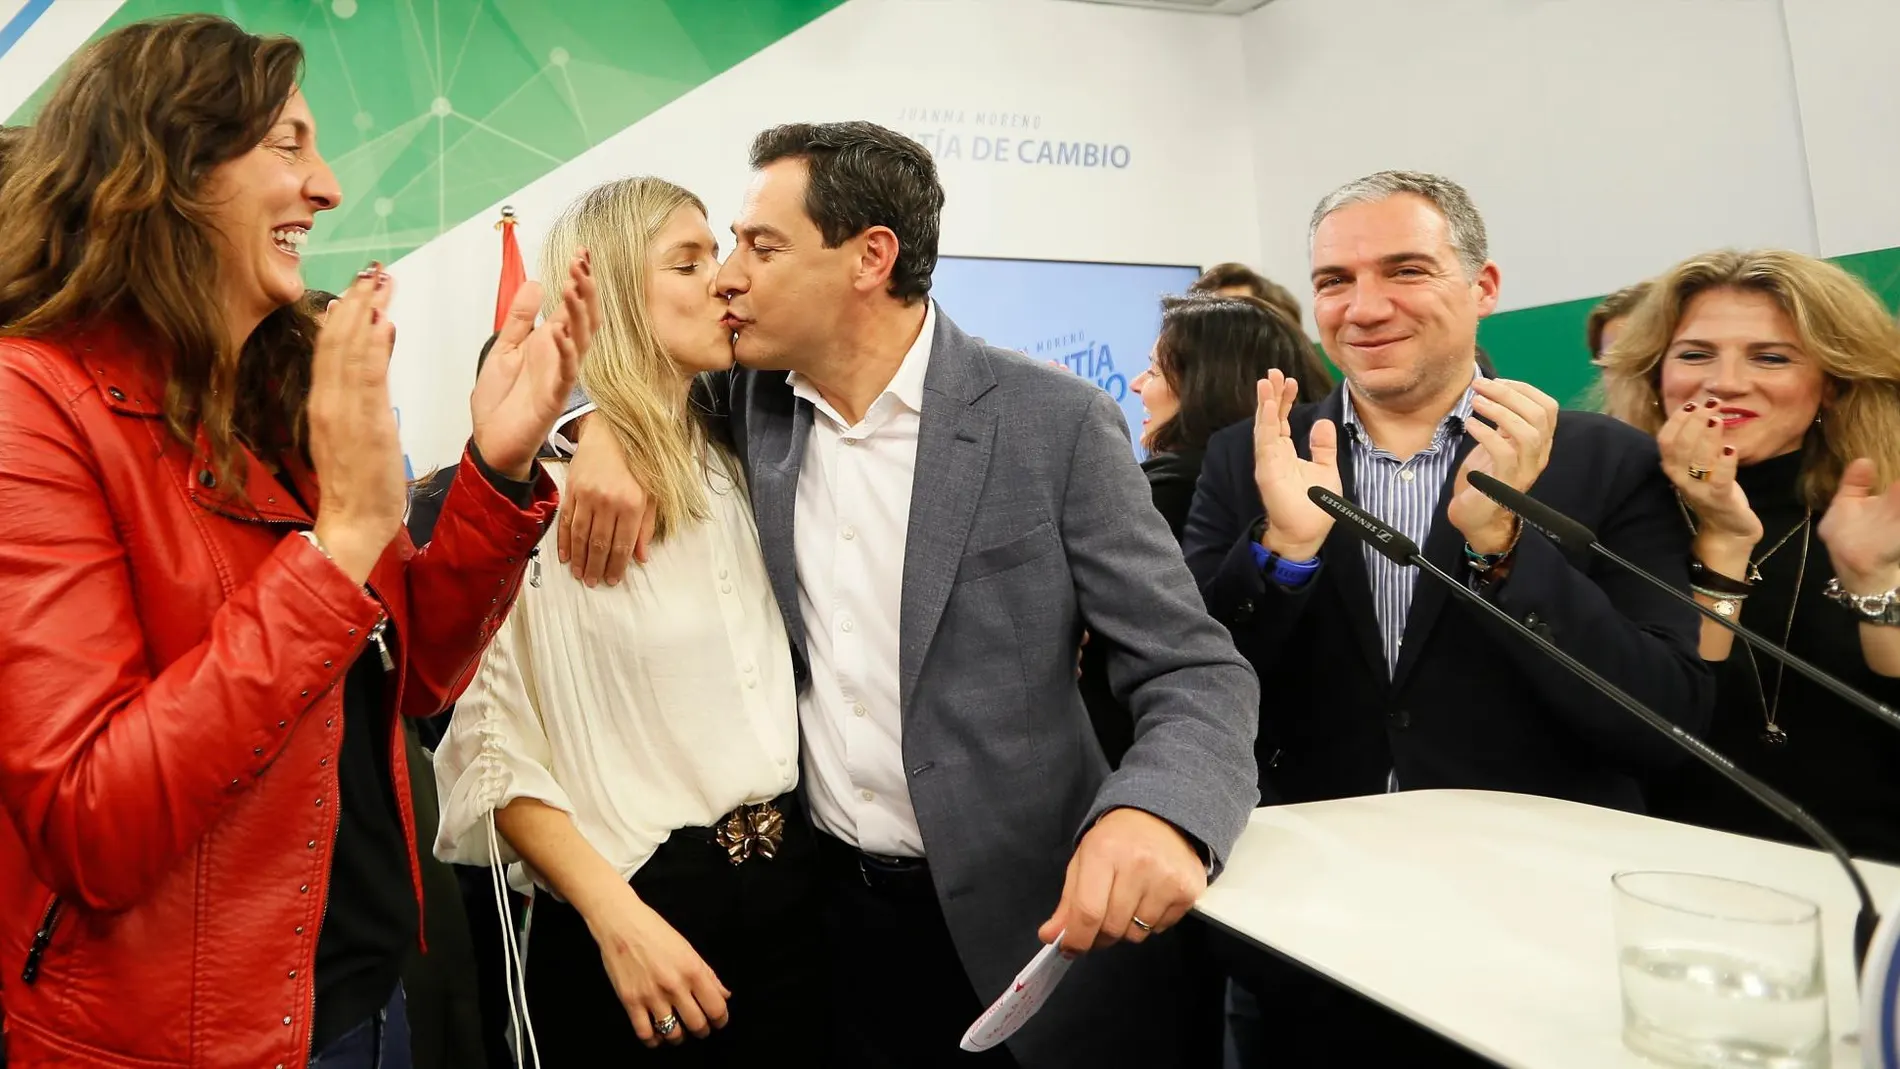 El candidato del Partido Popular a la presidencia de la Junta de Andalucía, Juan Manuel Moreno, besa a su esposa, Manuela Villena/Efe